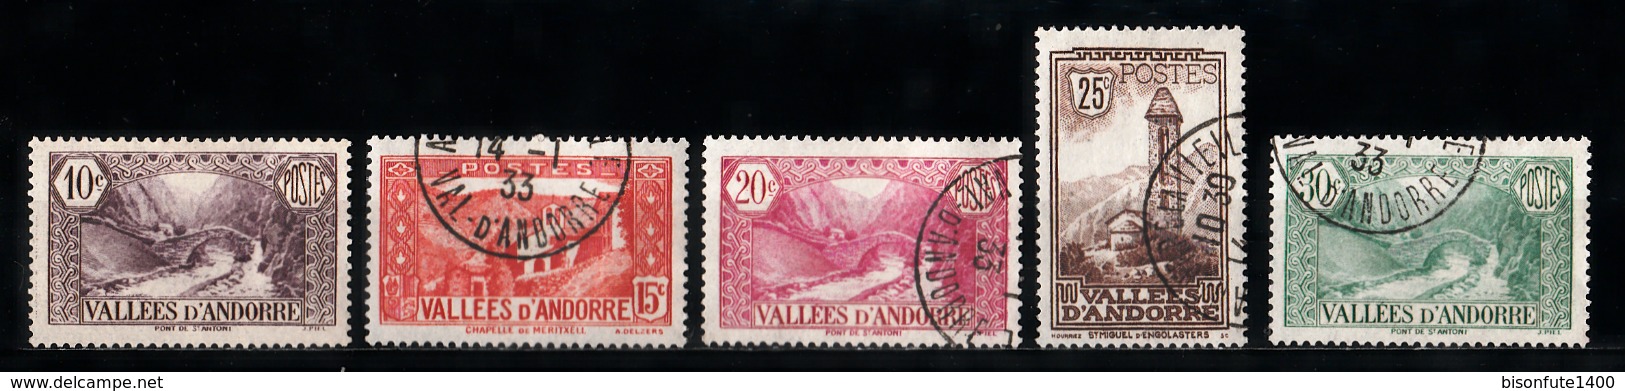 Andorre Français 1932 - 1933 : Timbres Yvert & Tellier N° 24 - 25 - 26 - 27 - 28 - 29 - 30 - 31 - 32 - 33 - 34 - 35 - .. - Oblitérés